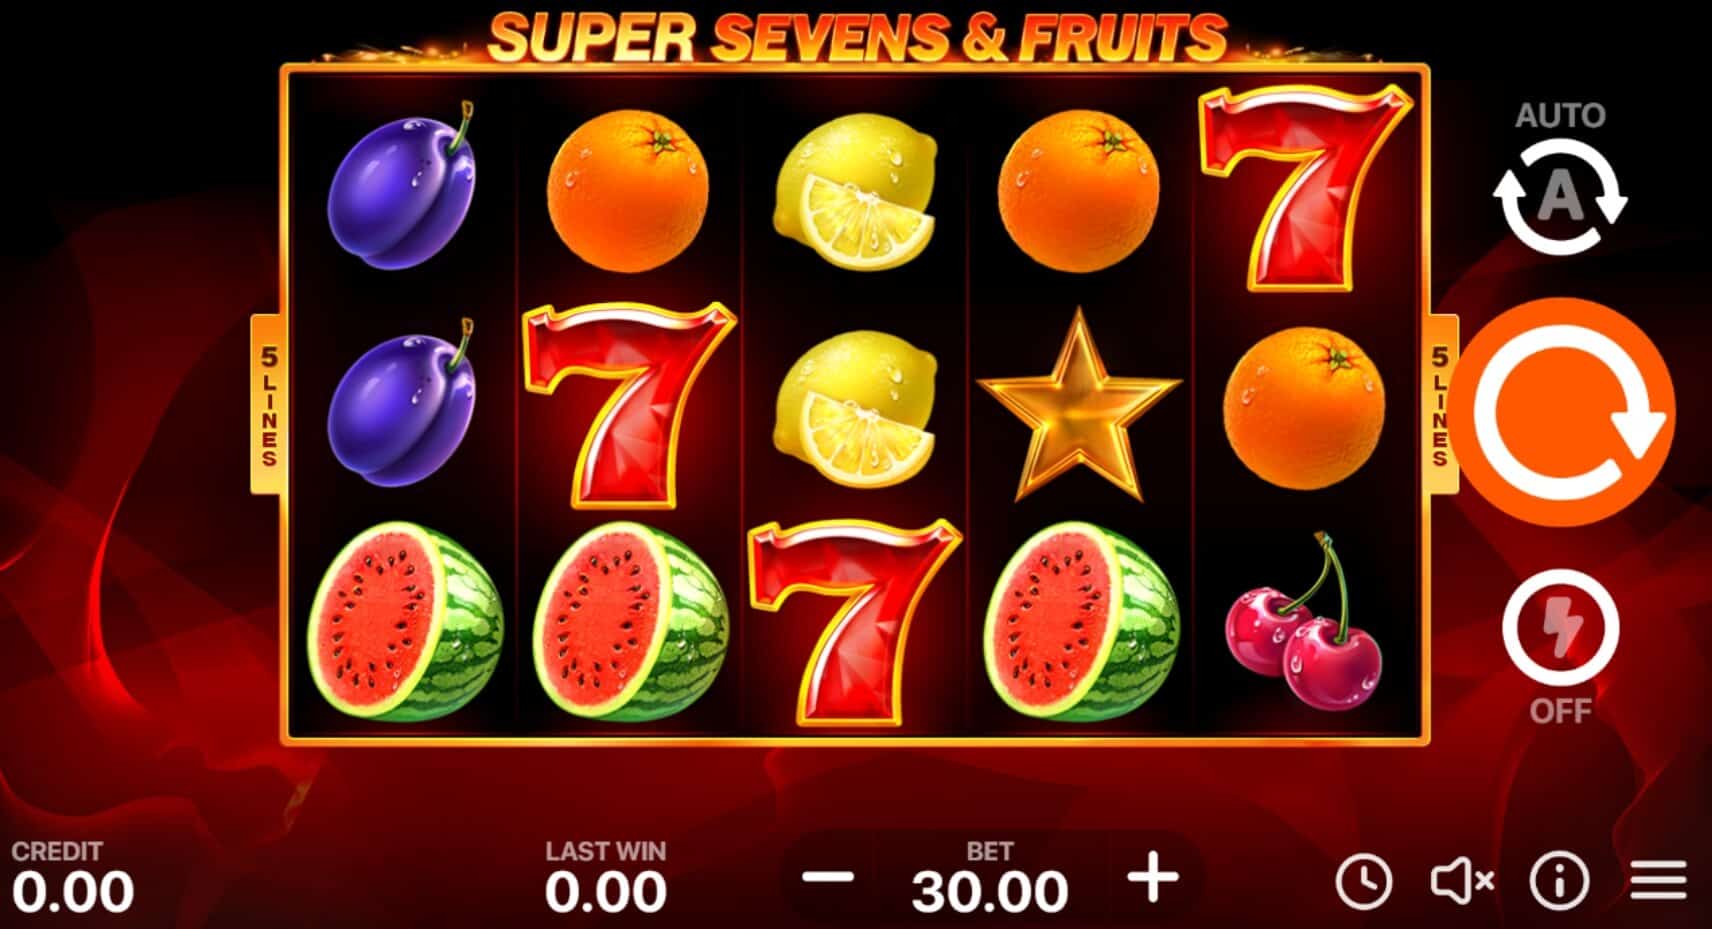 5 Super Seven & Fruits ค่าย booongo เว็บ สล็อต เว็บตรง SLOTXO จาก slotxo สมัคร